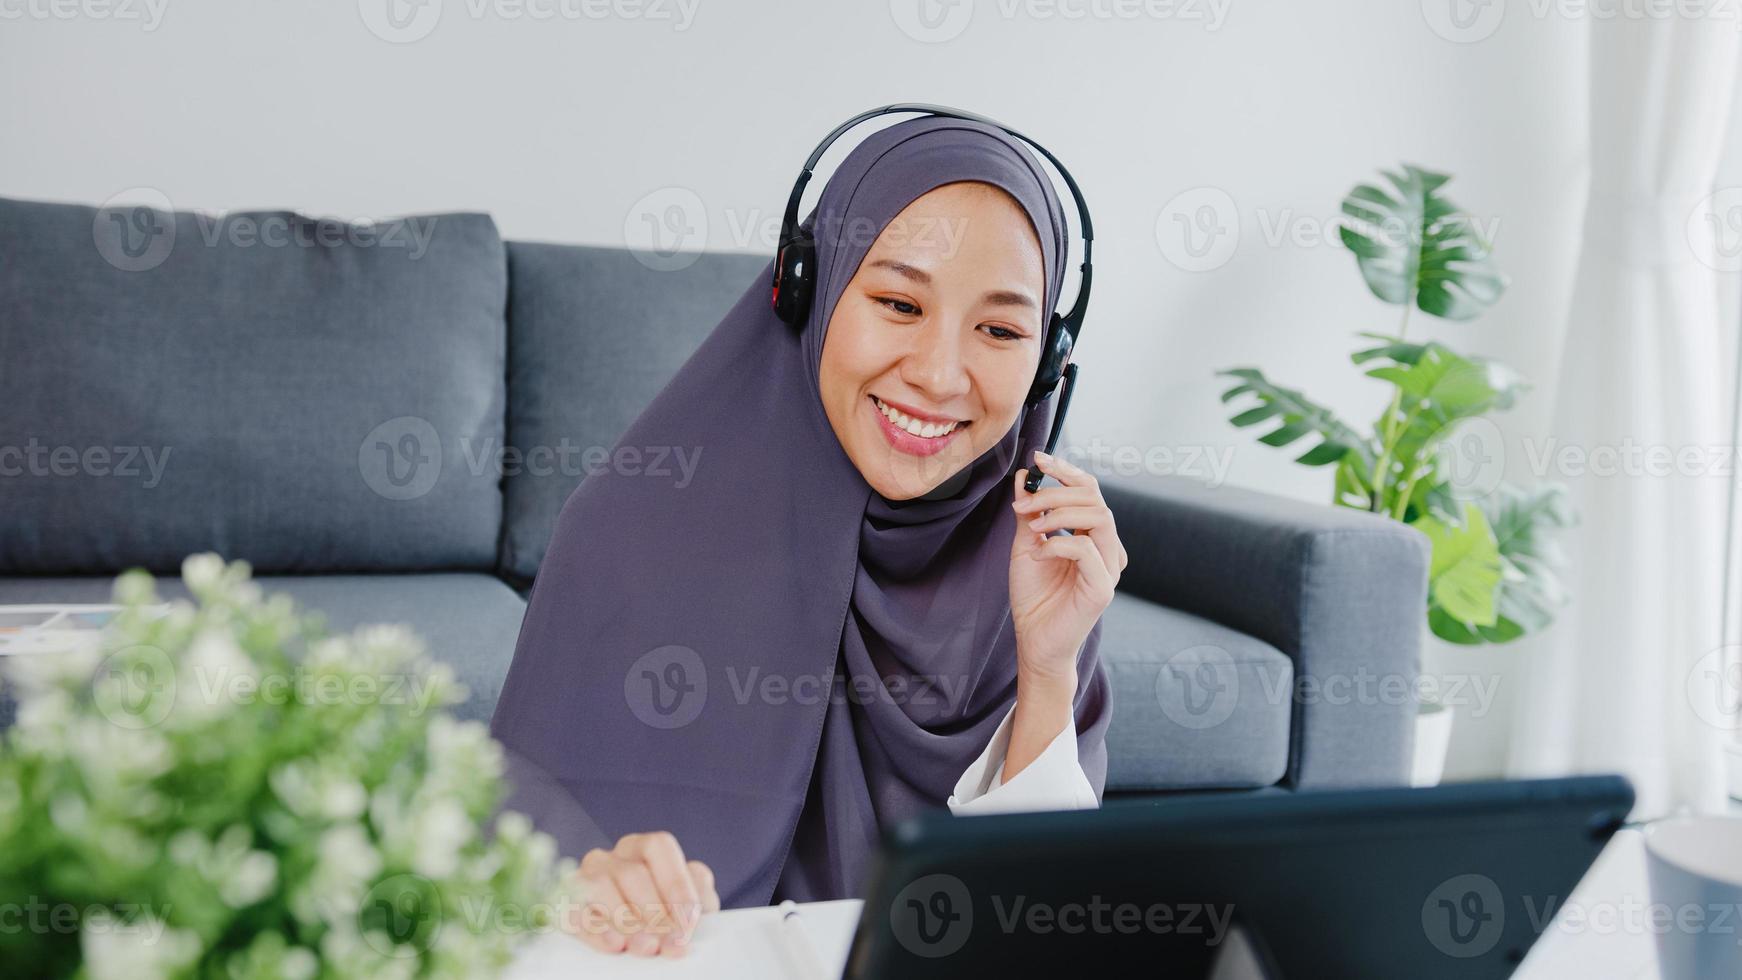 azië moslimdame draagt hoofdtelefoon met tablet praat met collega's over verkooprapport in videoconferentiegesprek terwijl ze vanuit huis in de woonkamer werkt. sociale afstand, quarantaine voor het coronavirus. foto